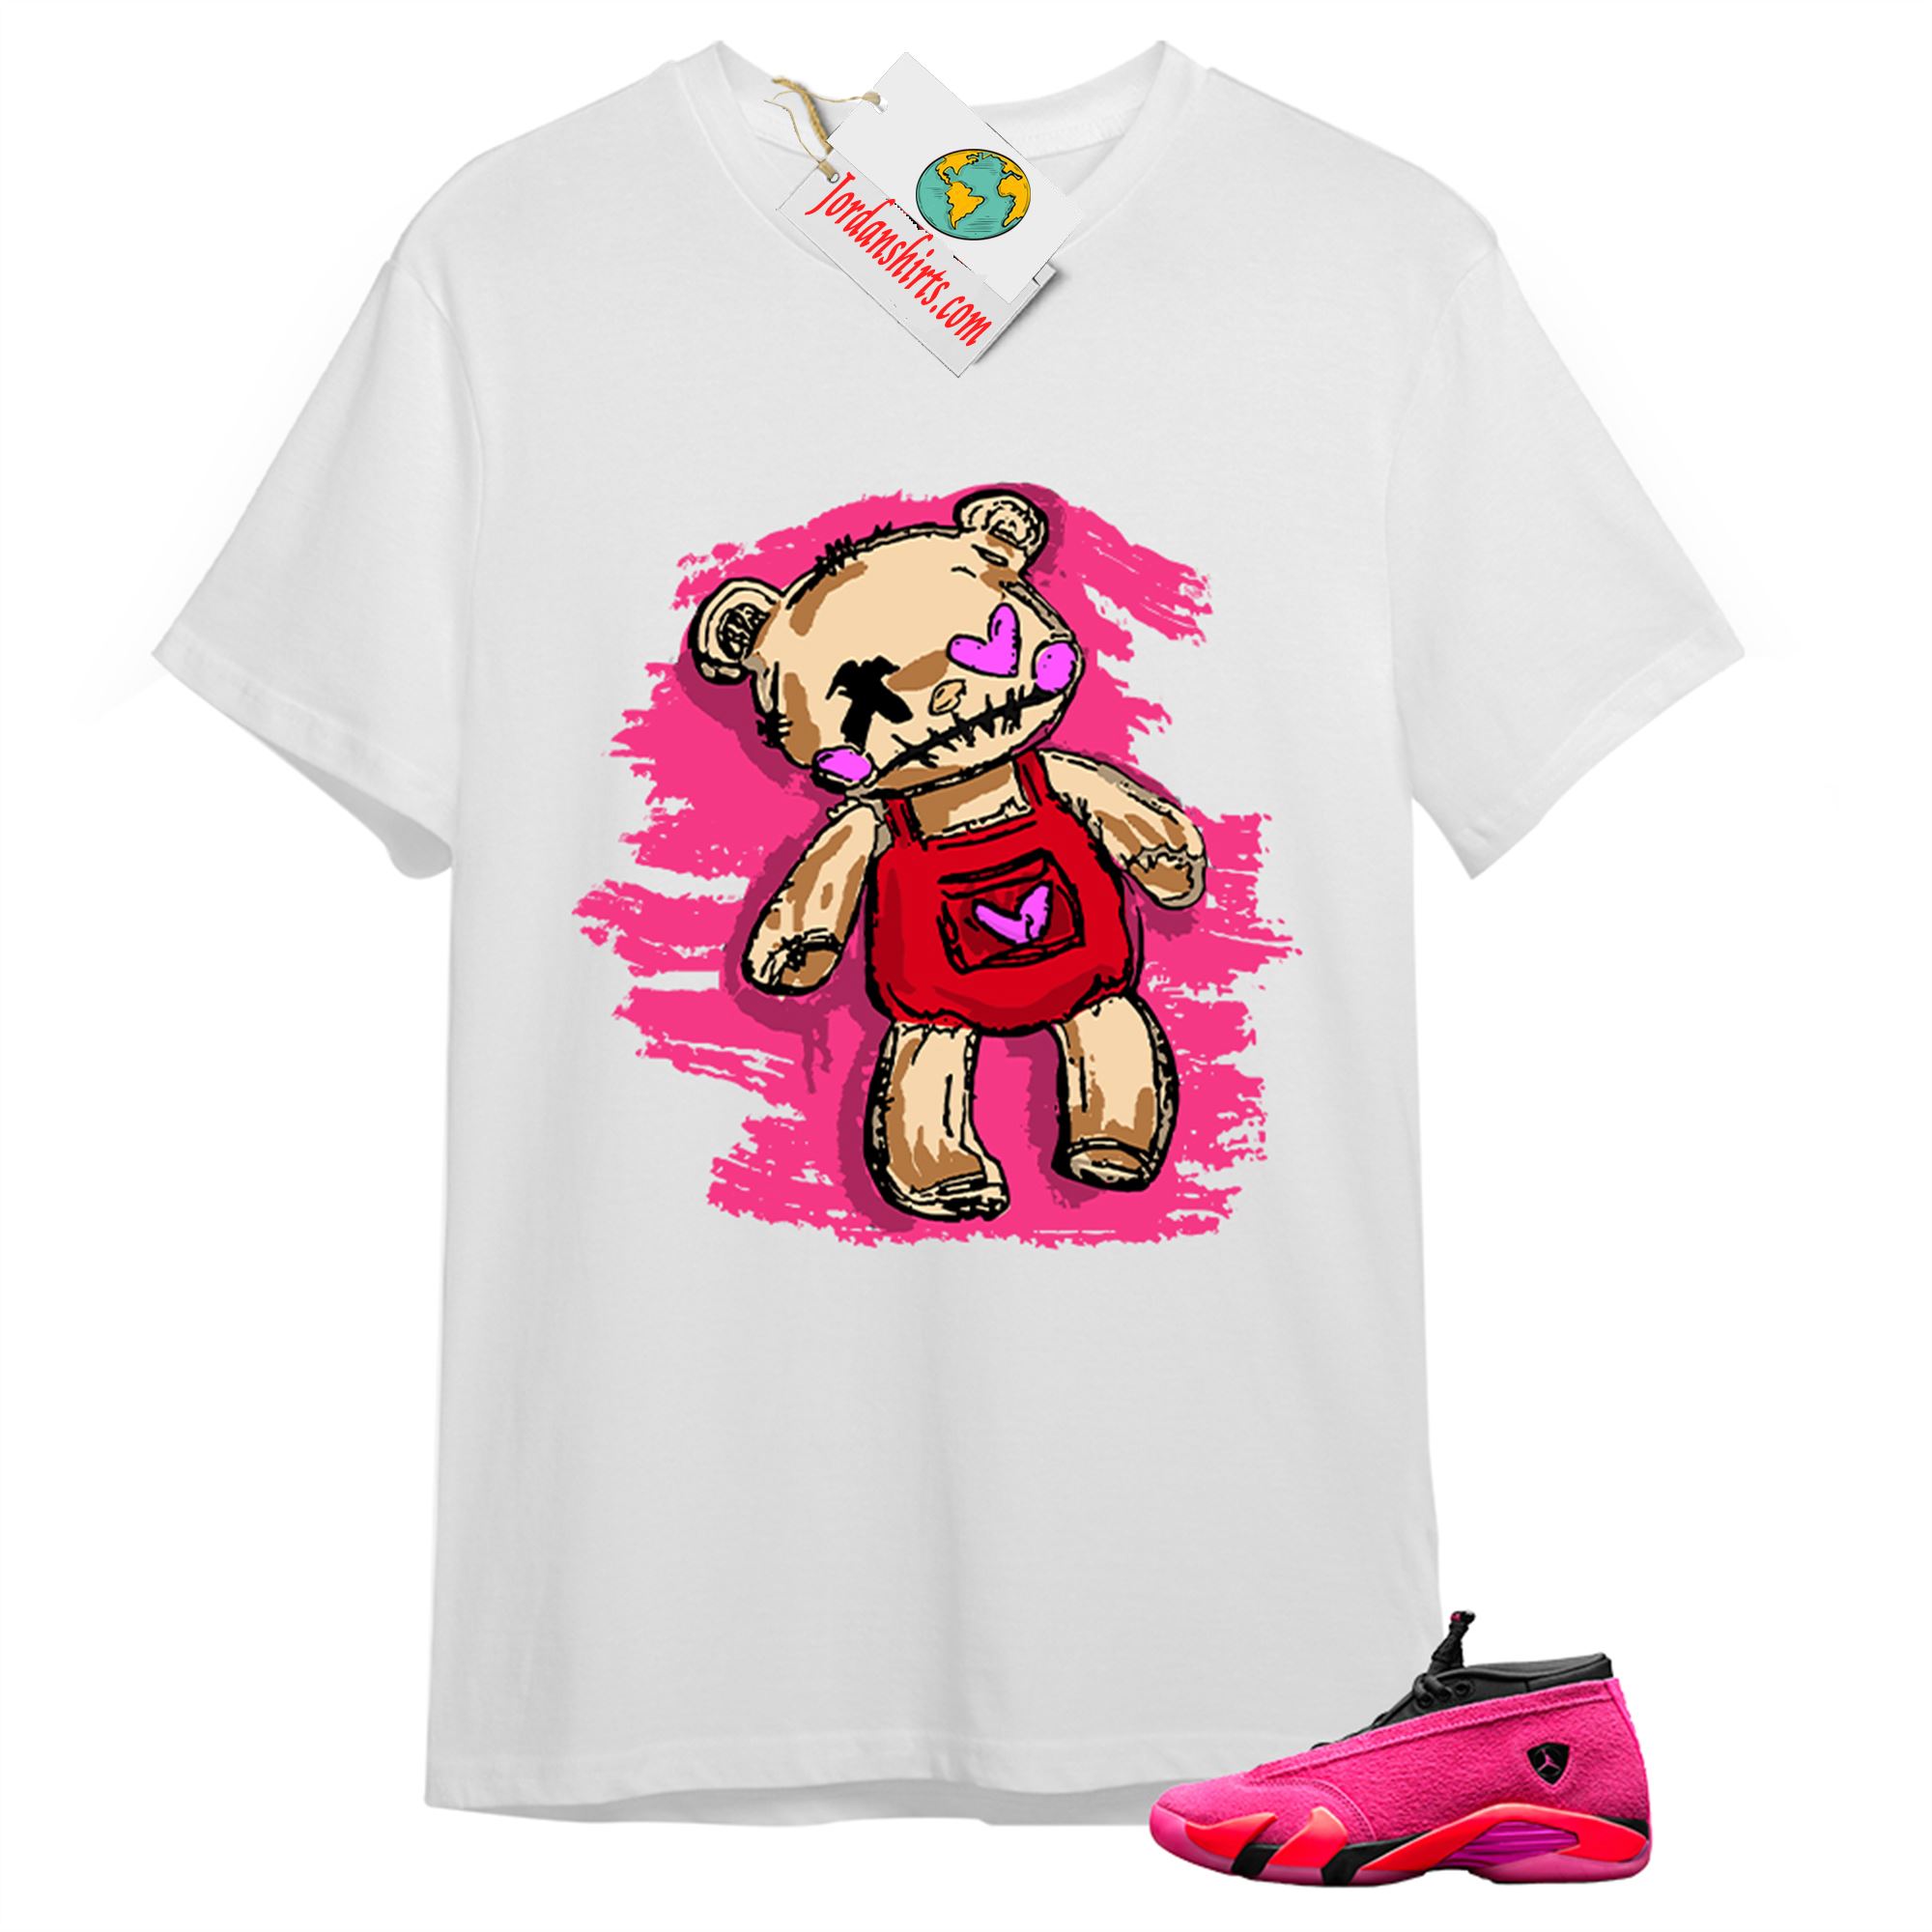 Jordan 14 Shirt, Teddy Bear Broken Heart White T-shirt Air Jordan 14 Wmns Shocking Pink 14s Size Up To 5xl